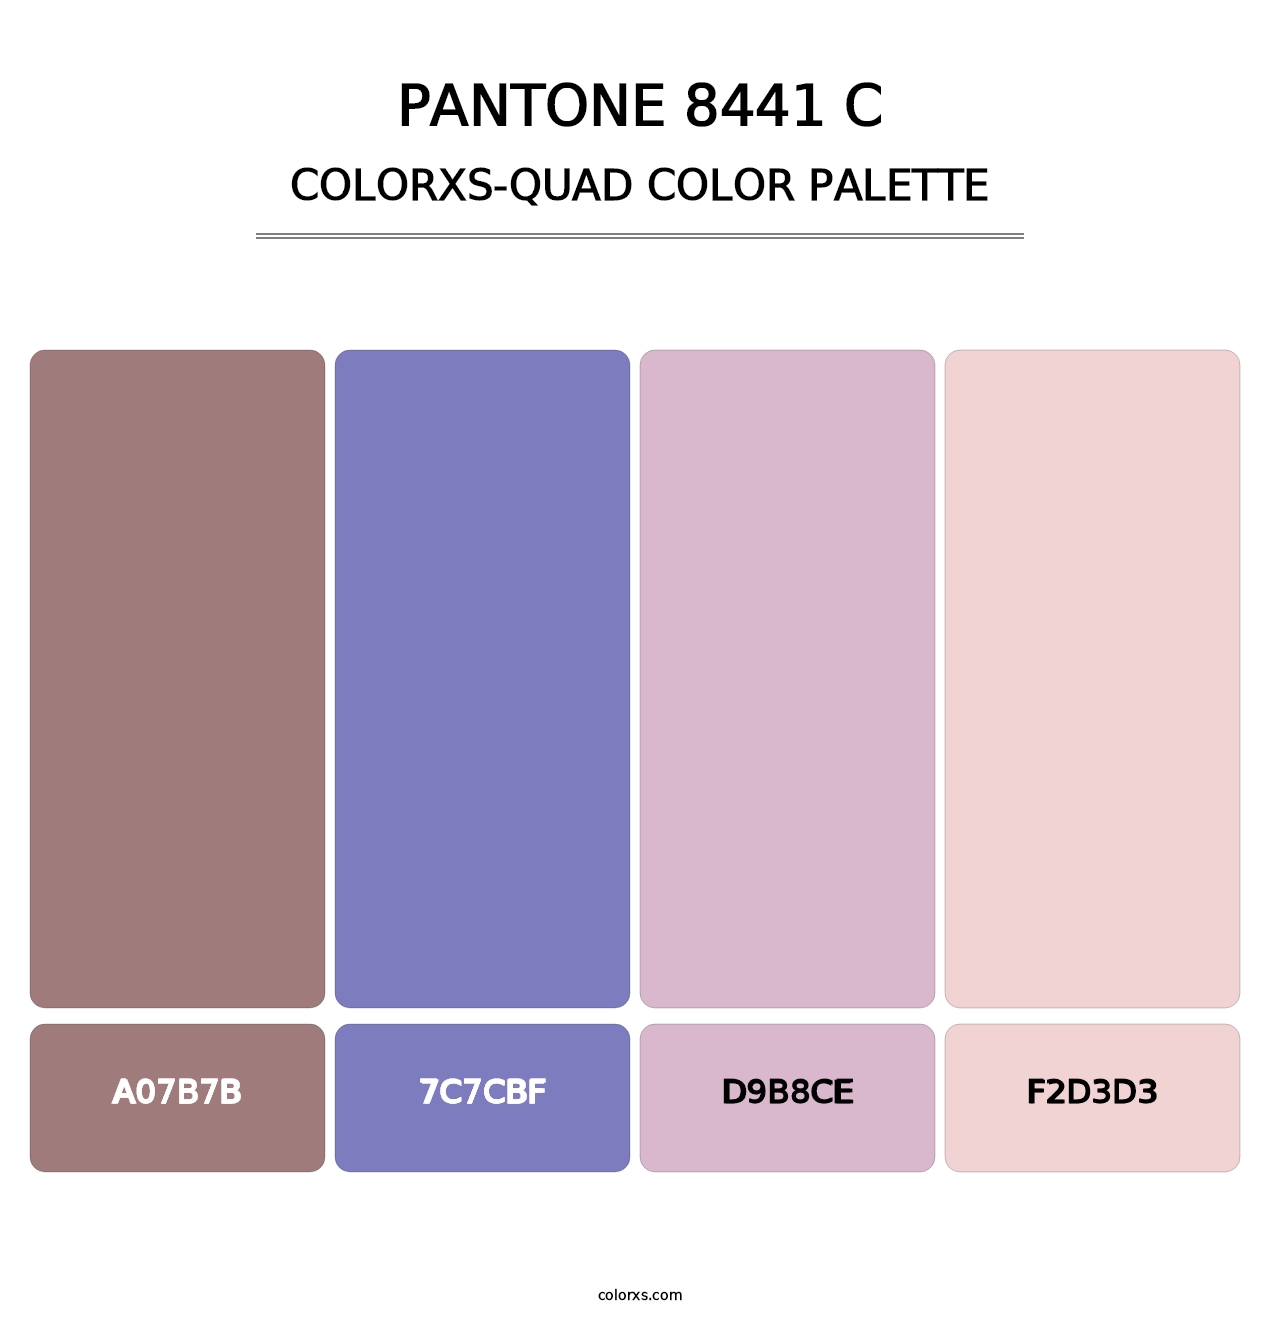 PANTONE 8441 C - Colorxs Quad Palette